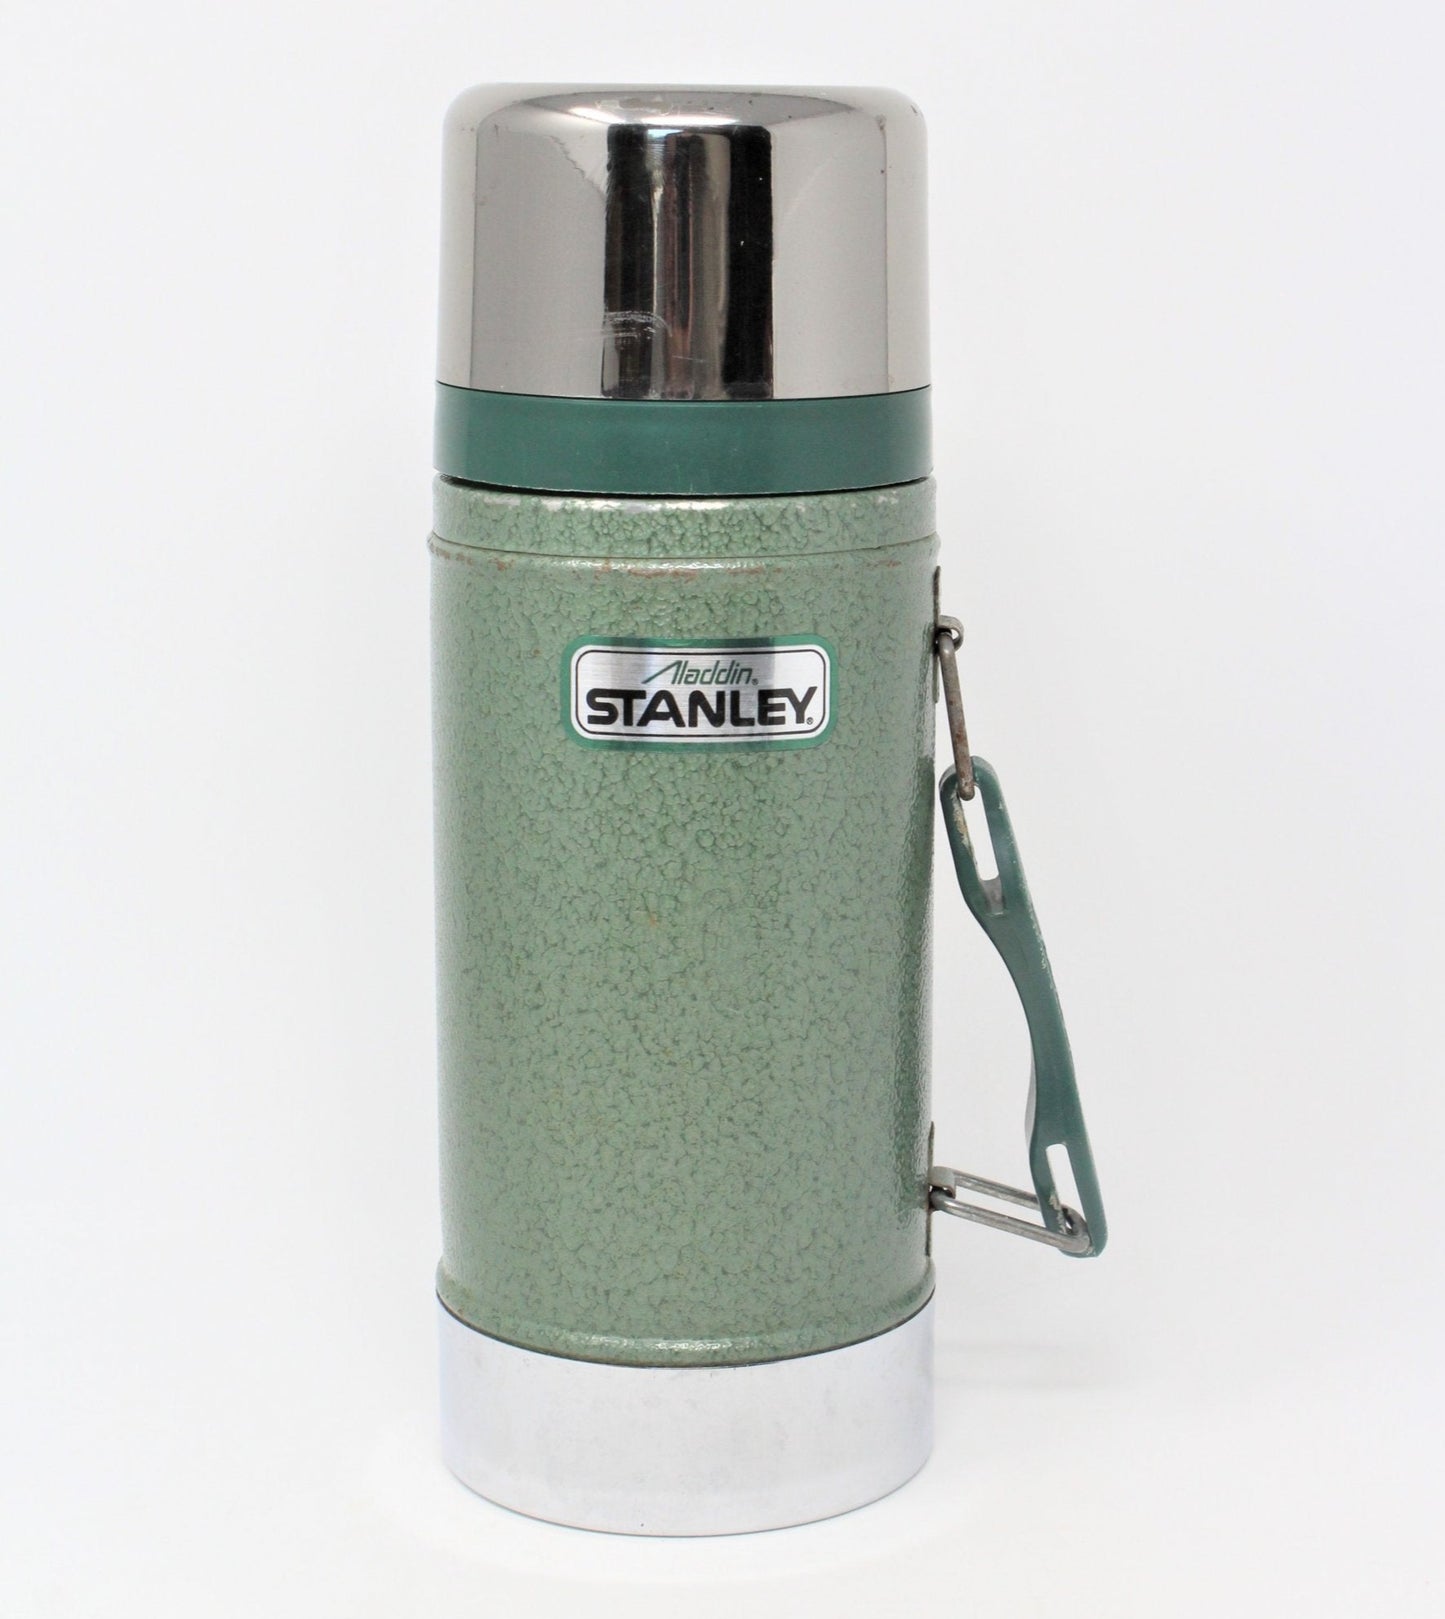 Stanley 24 Oz. Green Stainless Steel Thermal Food Jar Mug